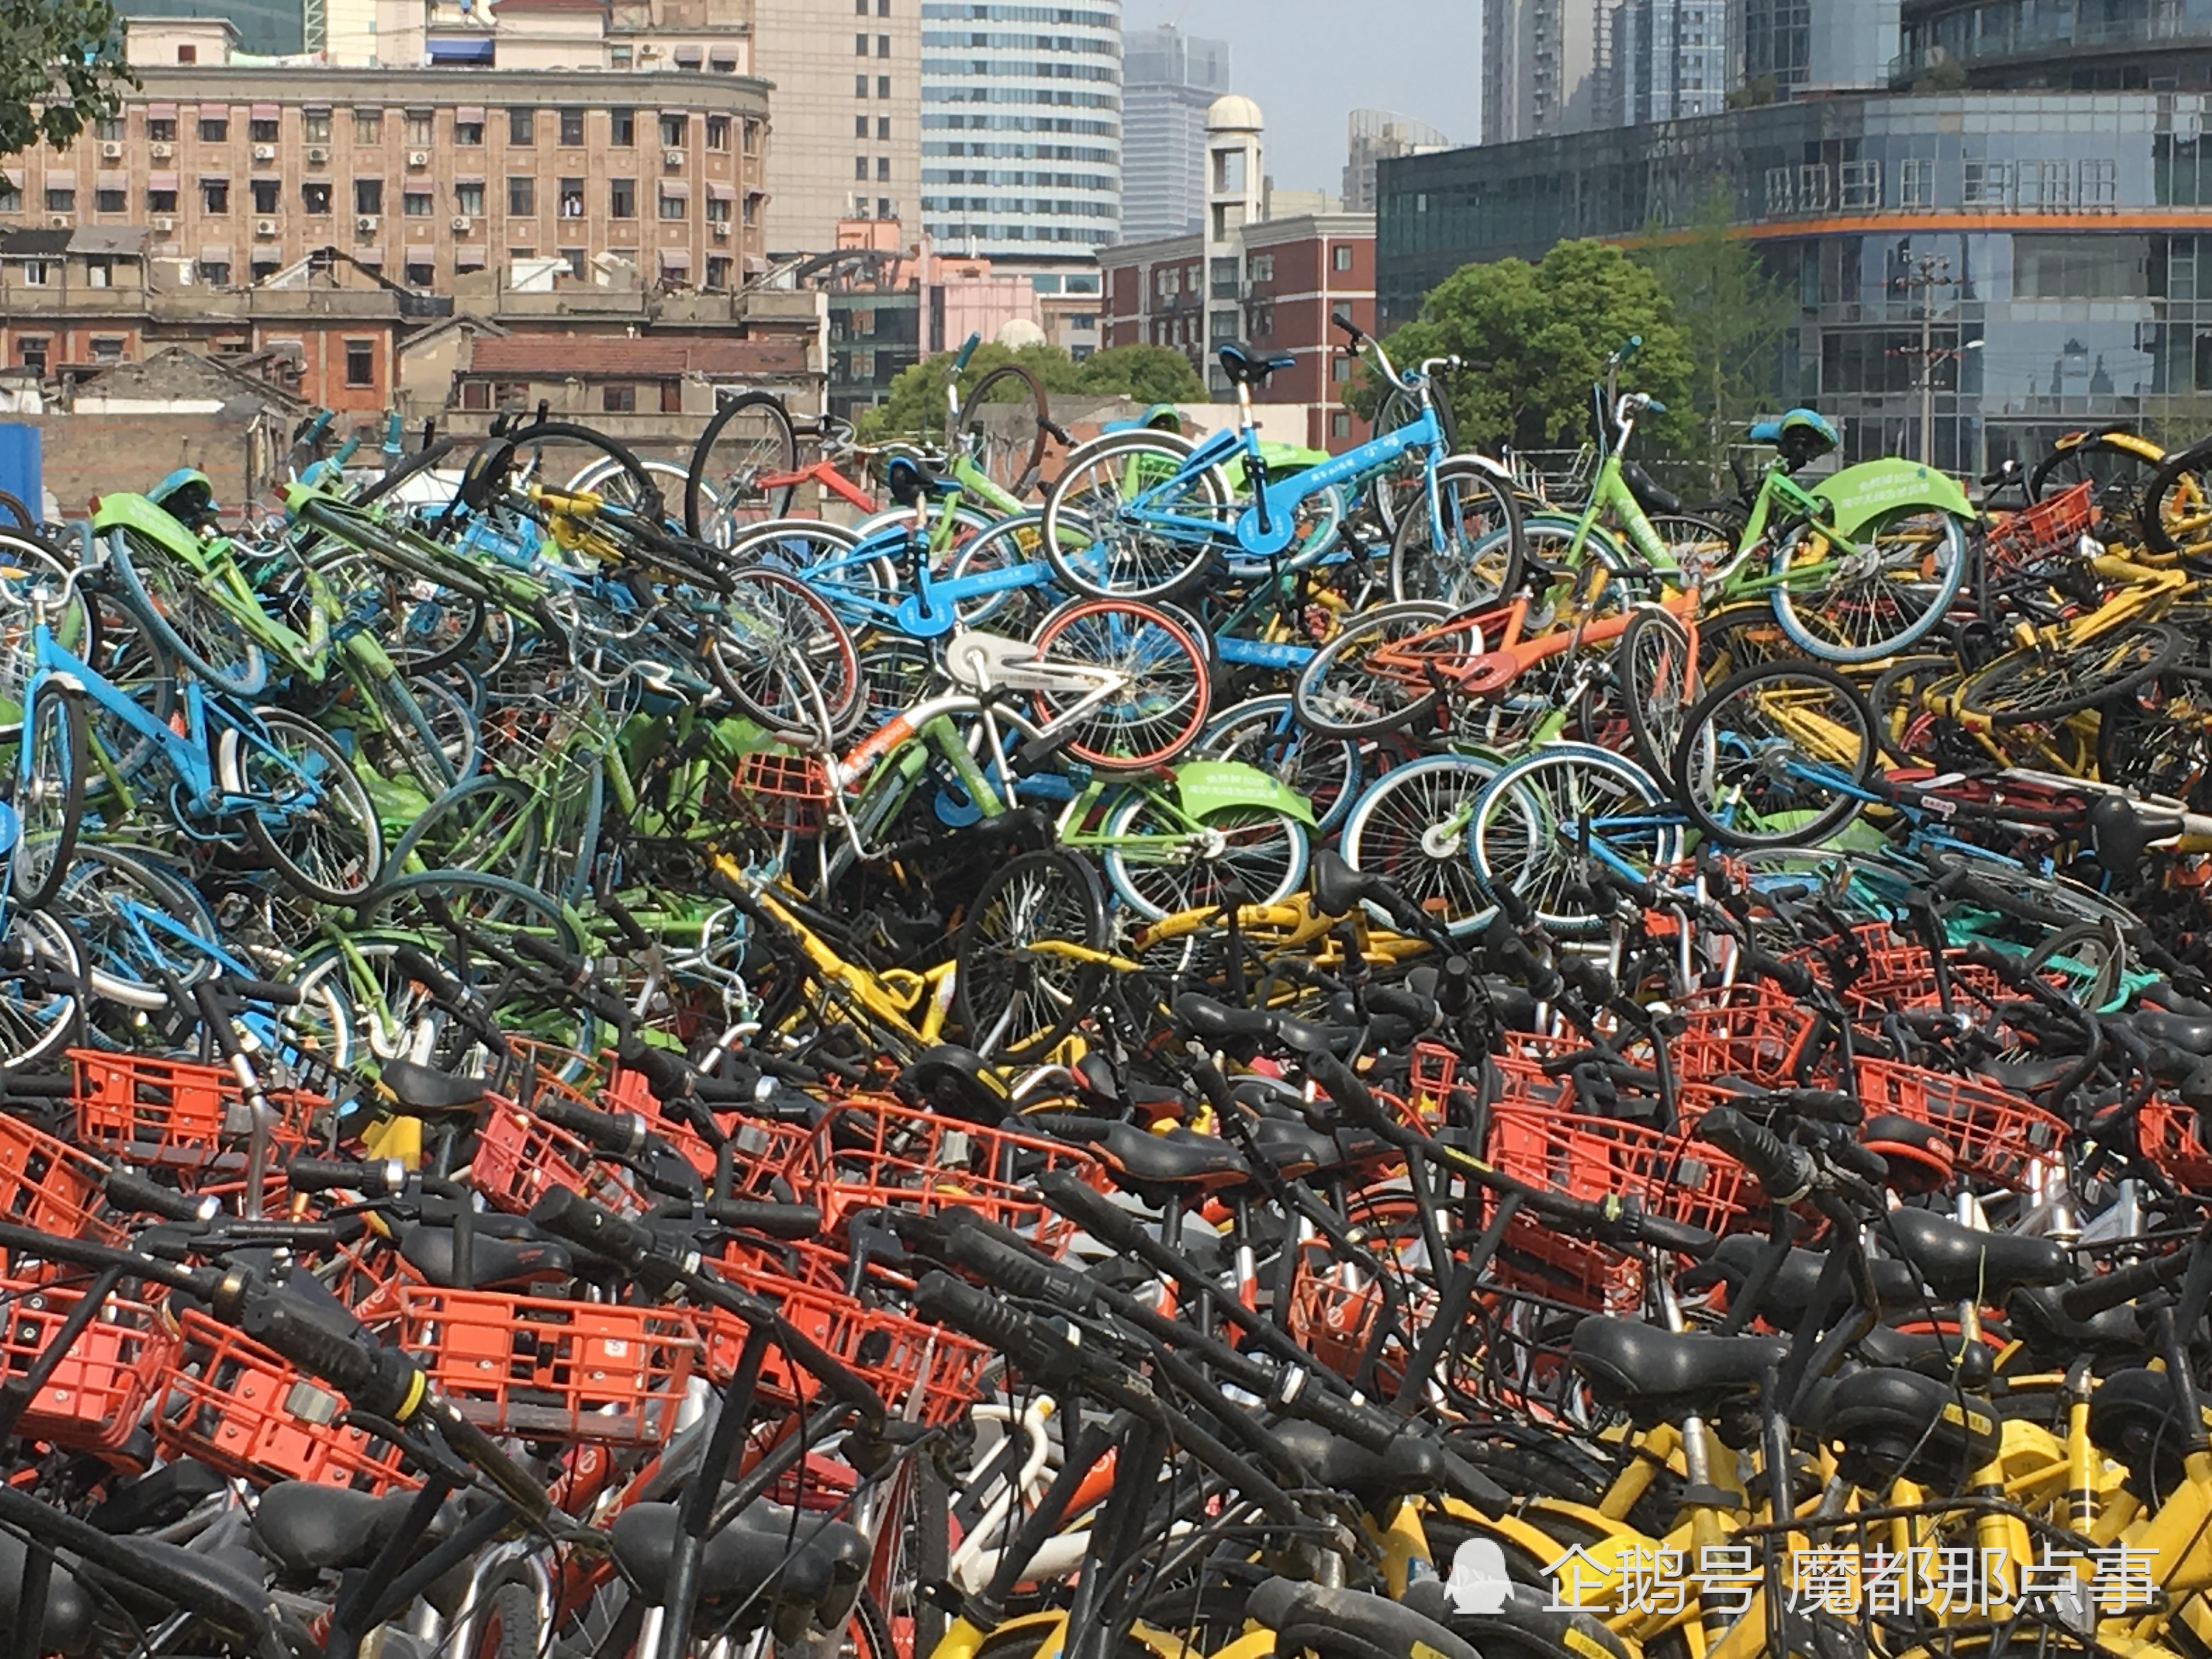 上海闹市中心再现共享单车坟场,数千辆共享单